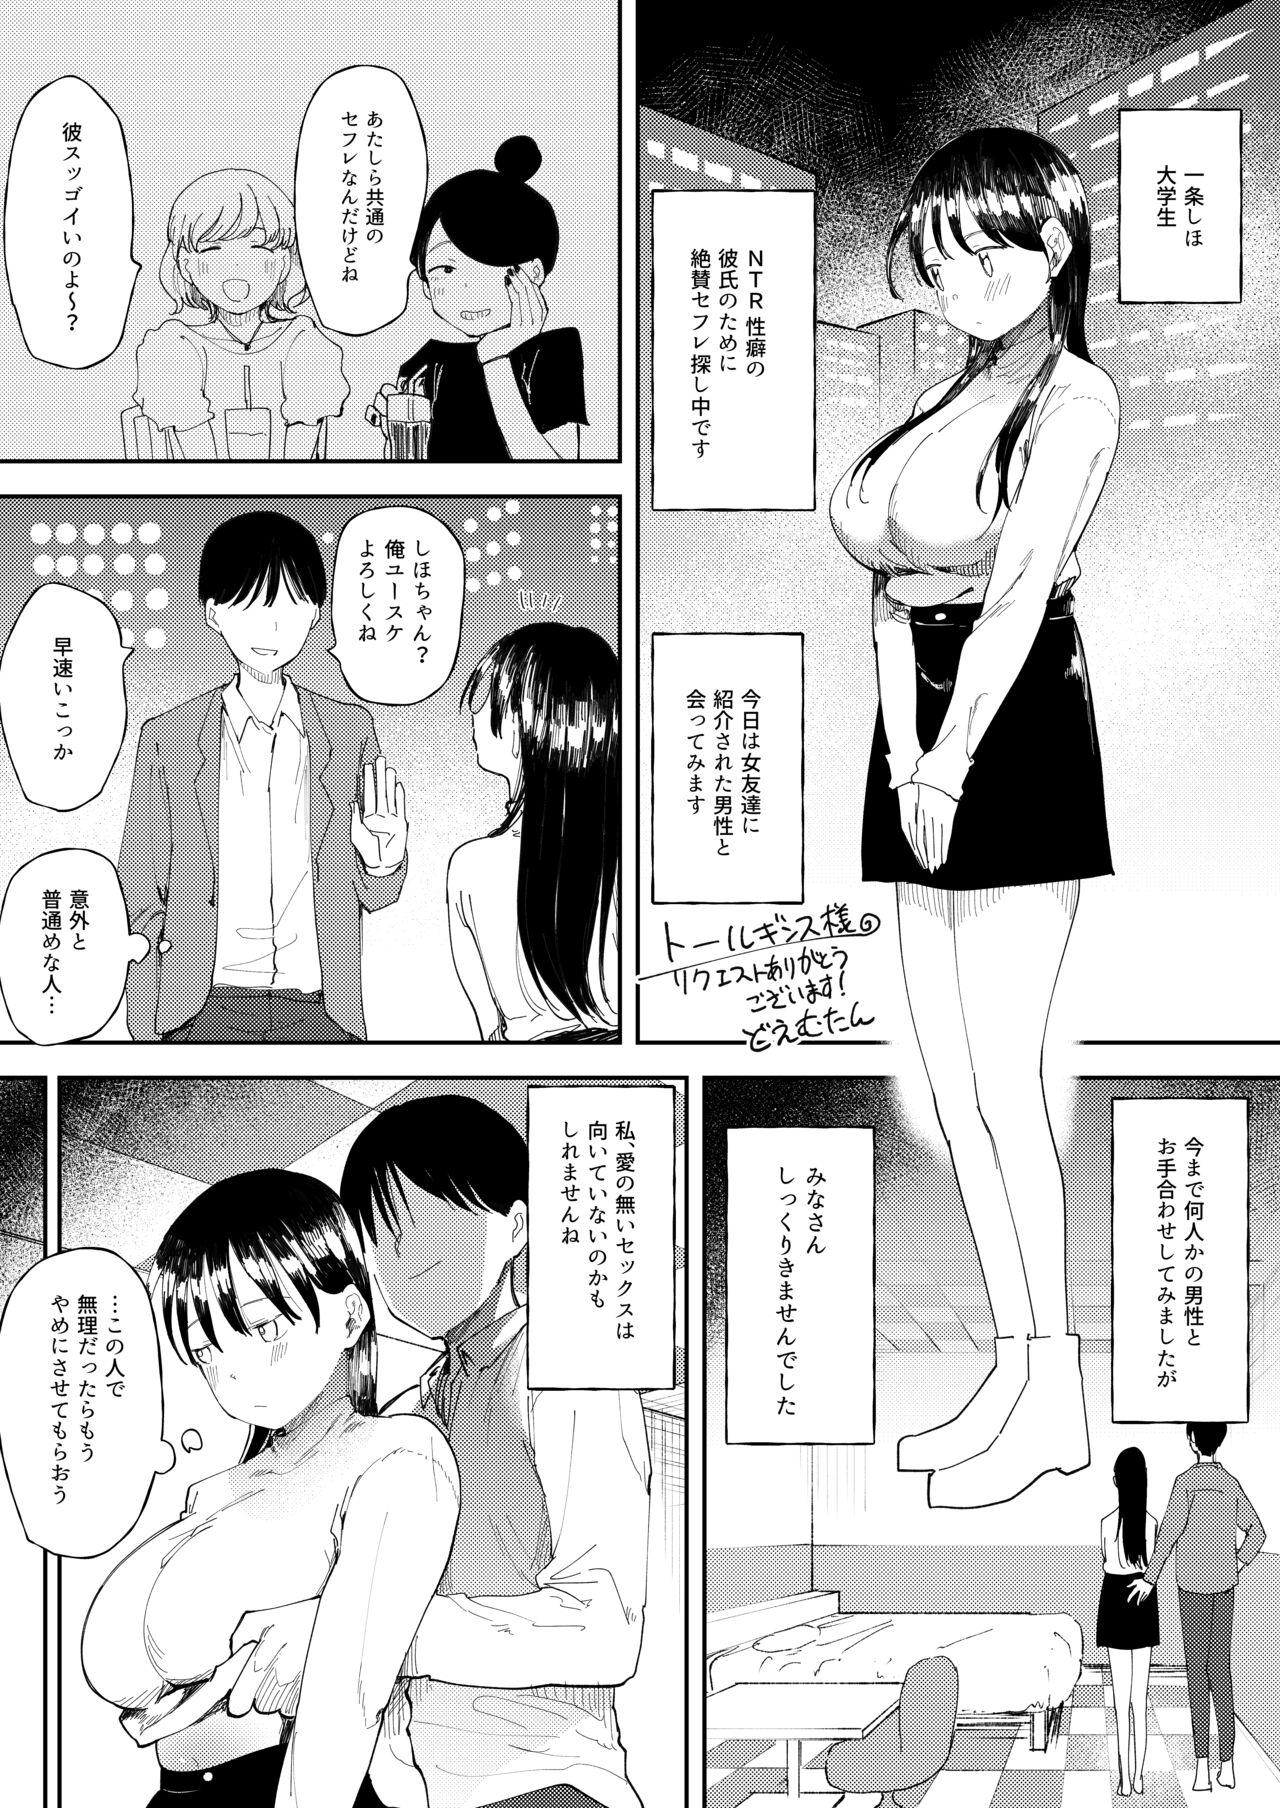 Tites NTR Seiheki no Kanojo no Tame ni Sex Friend wo Sagasu Joshi Daisei-chan - Original Oriental - Picture 1